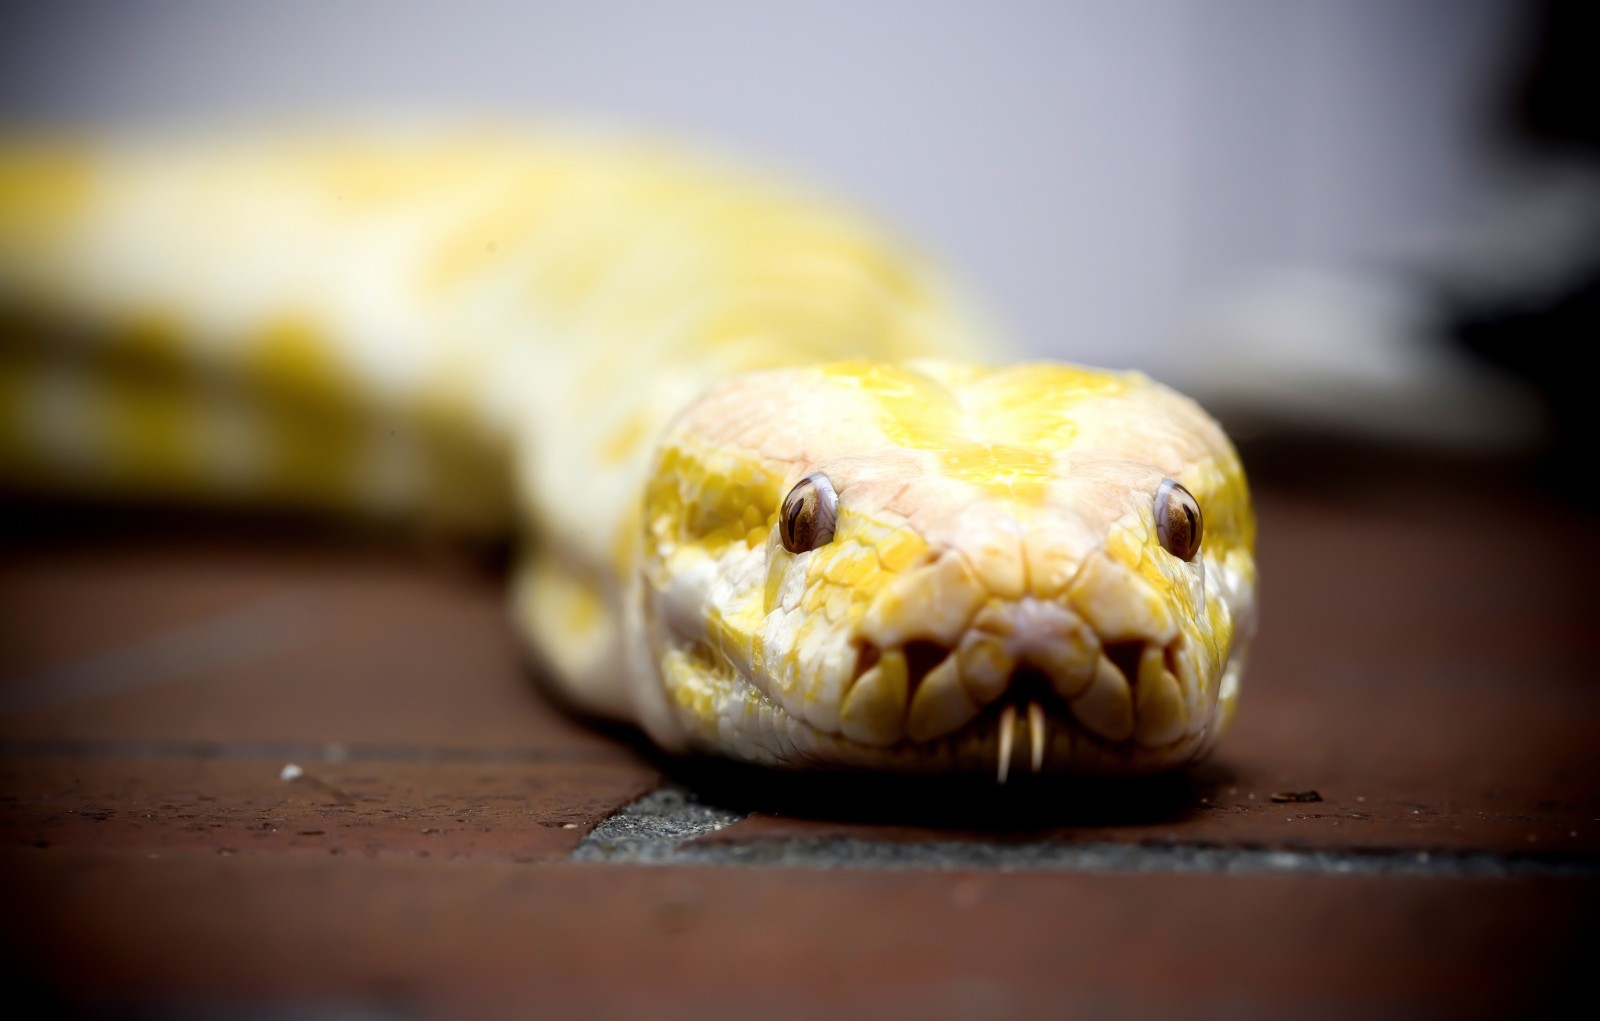 Tổng hợp hình ảnh về loài rắn đẹp nhất - [Kích thước hình ảnh: 1600x1021 px]